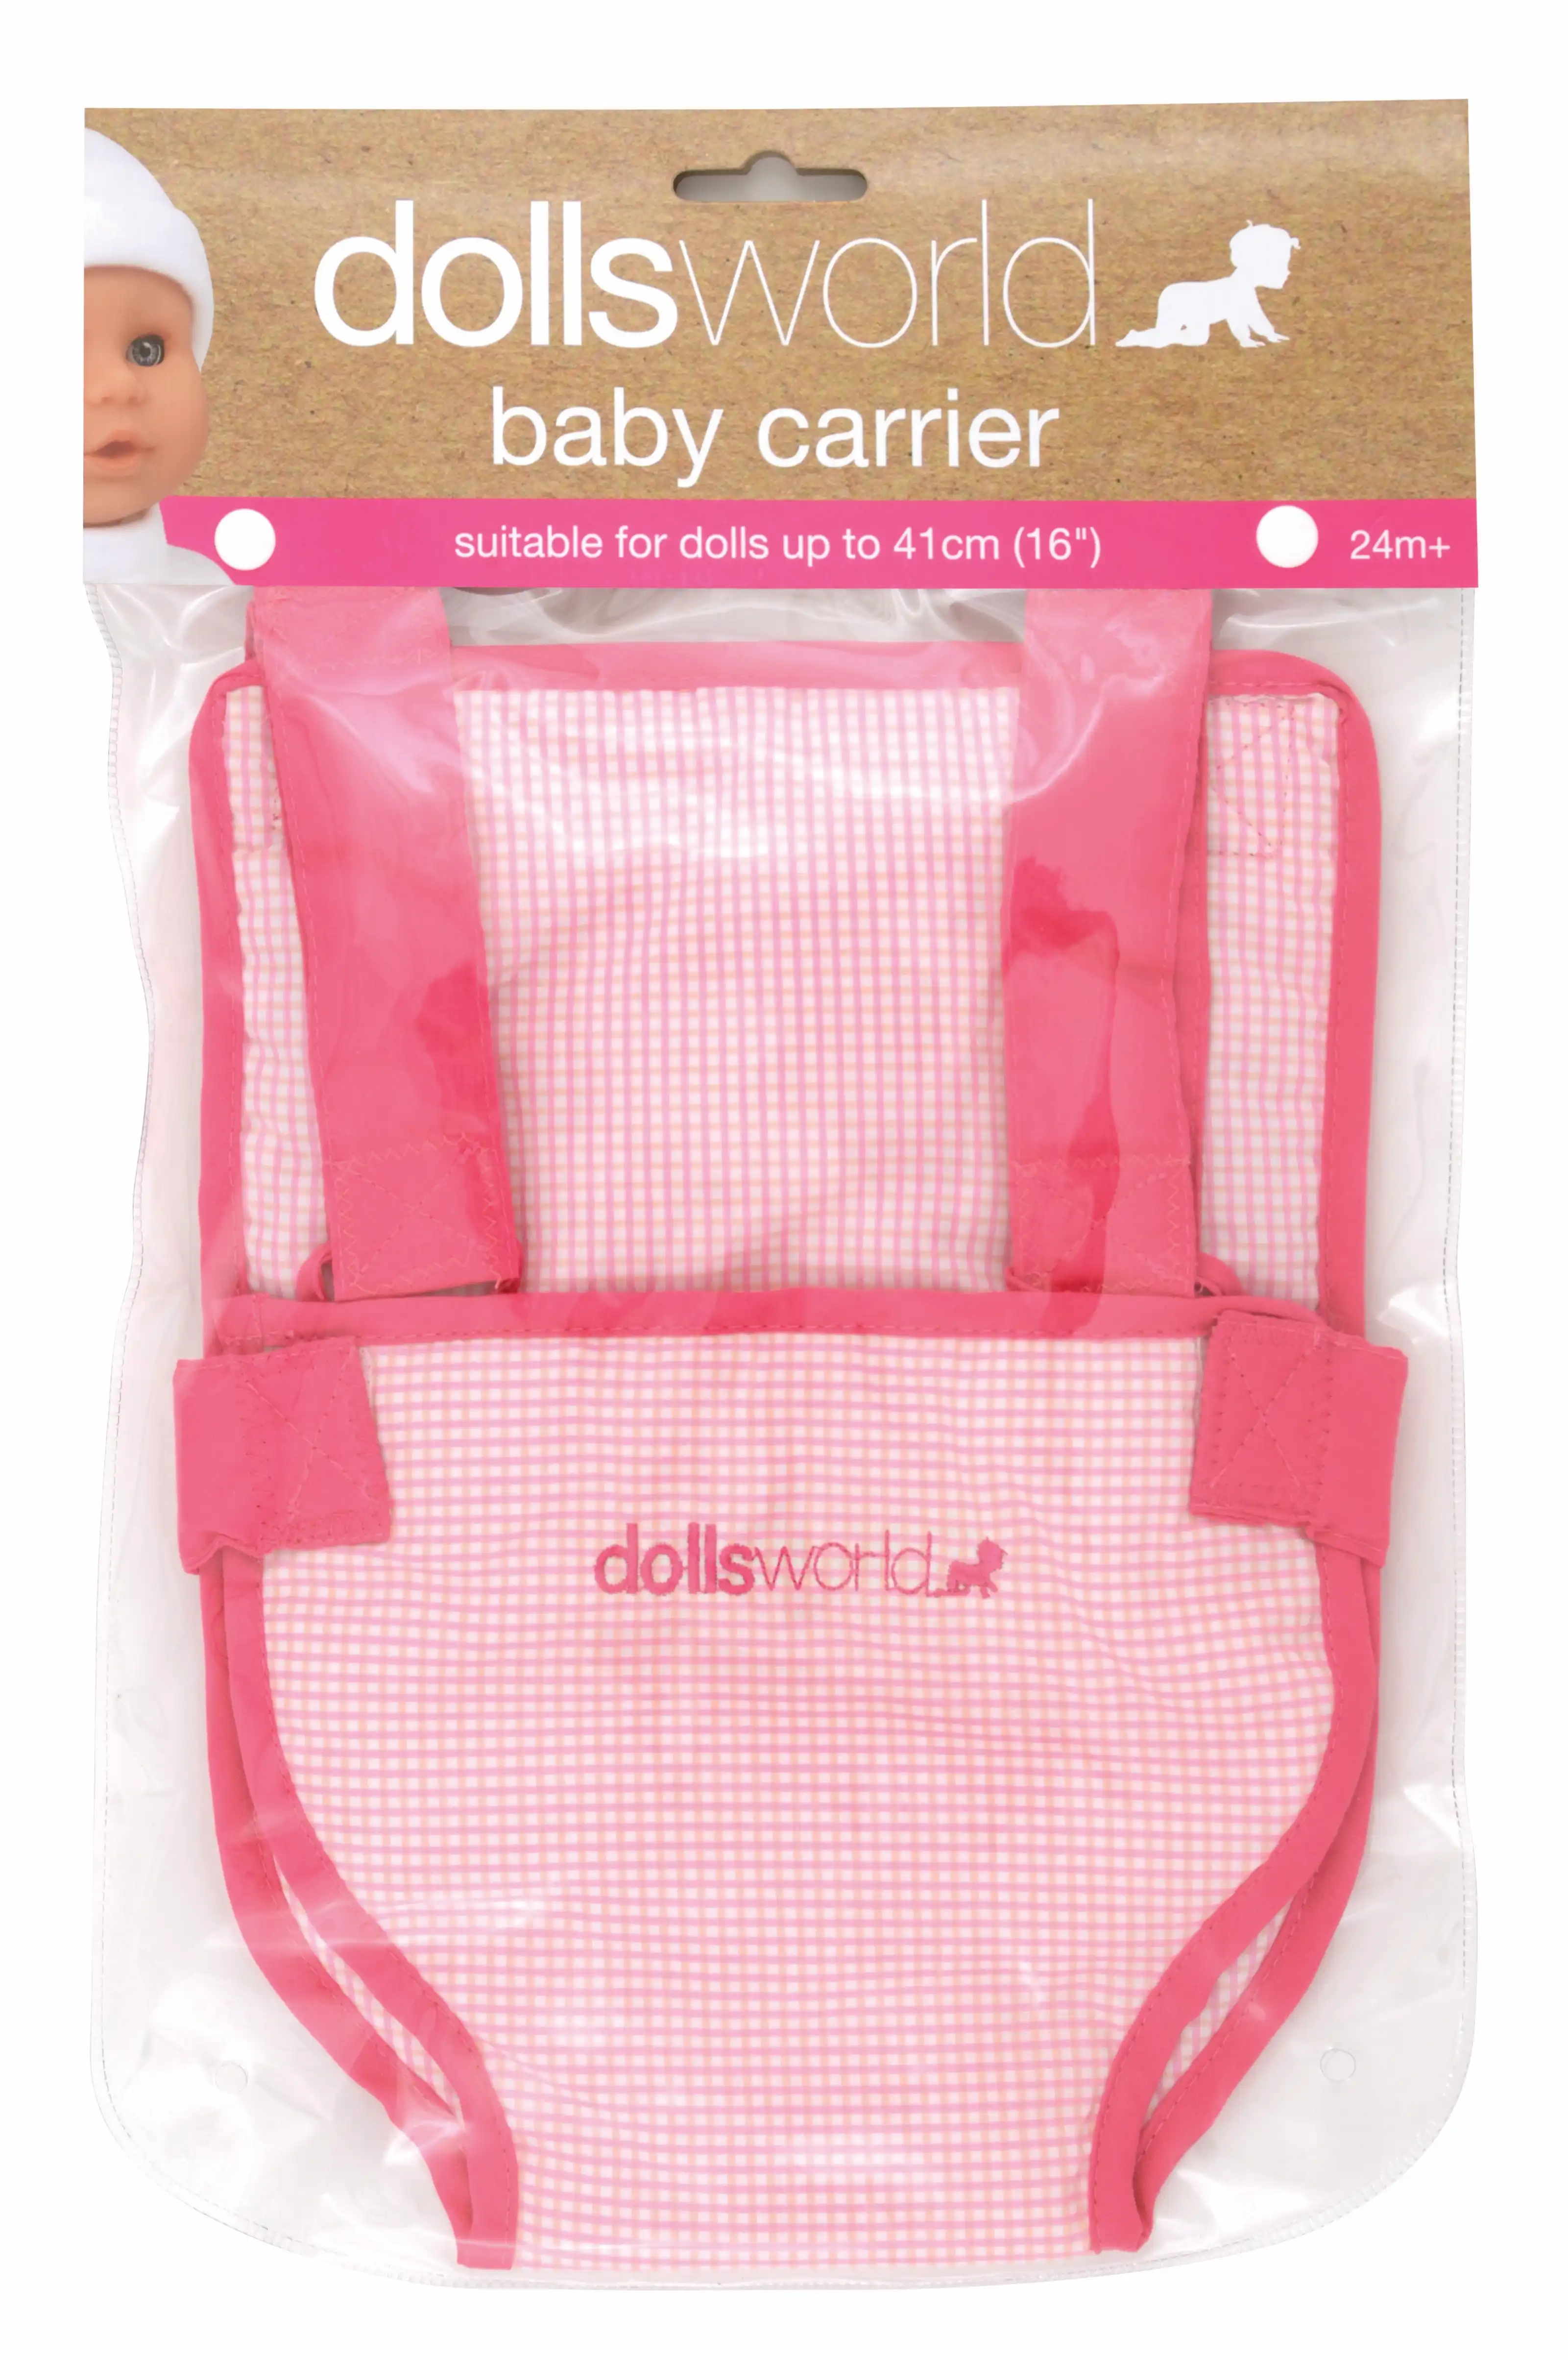 Dollsworld Gold Baby Carrier